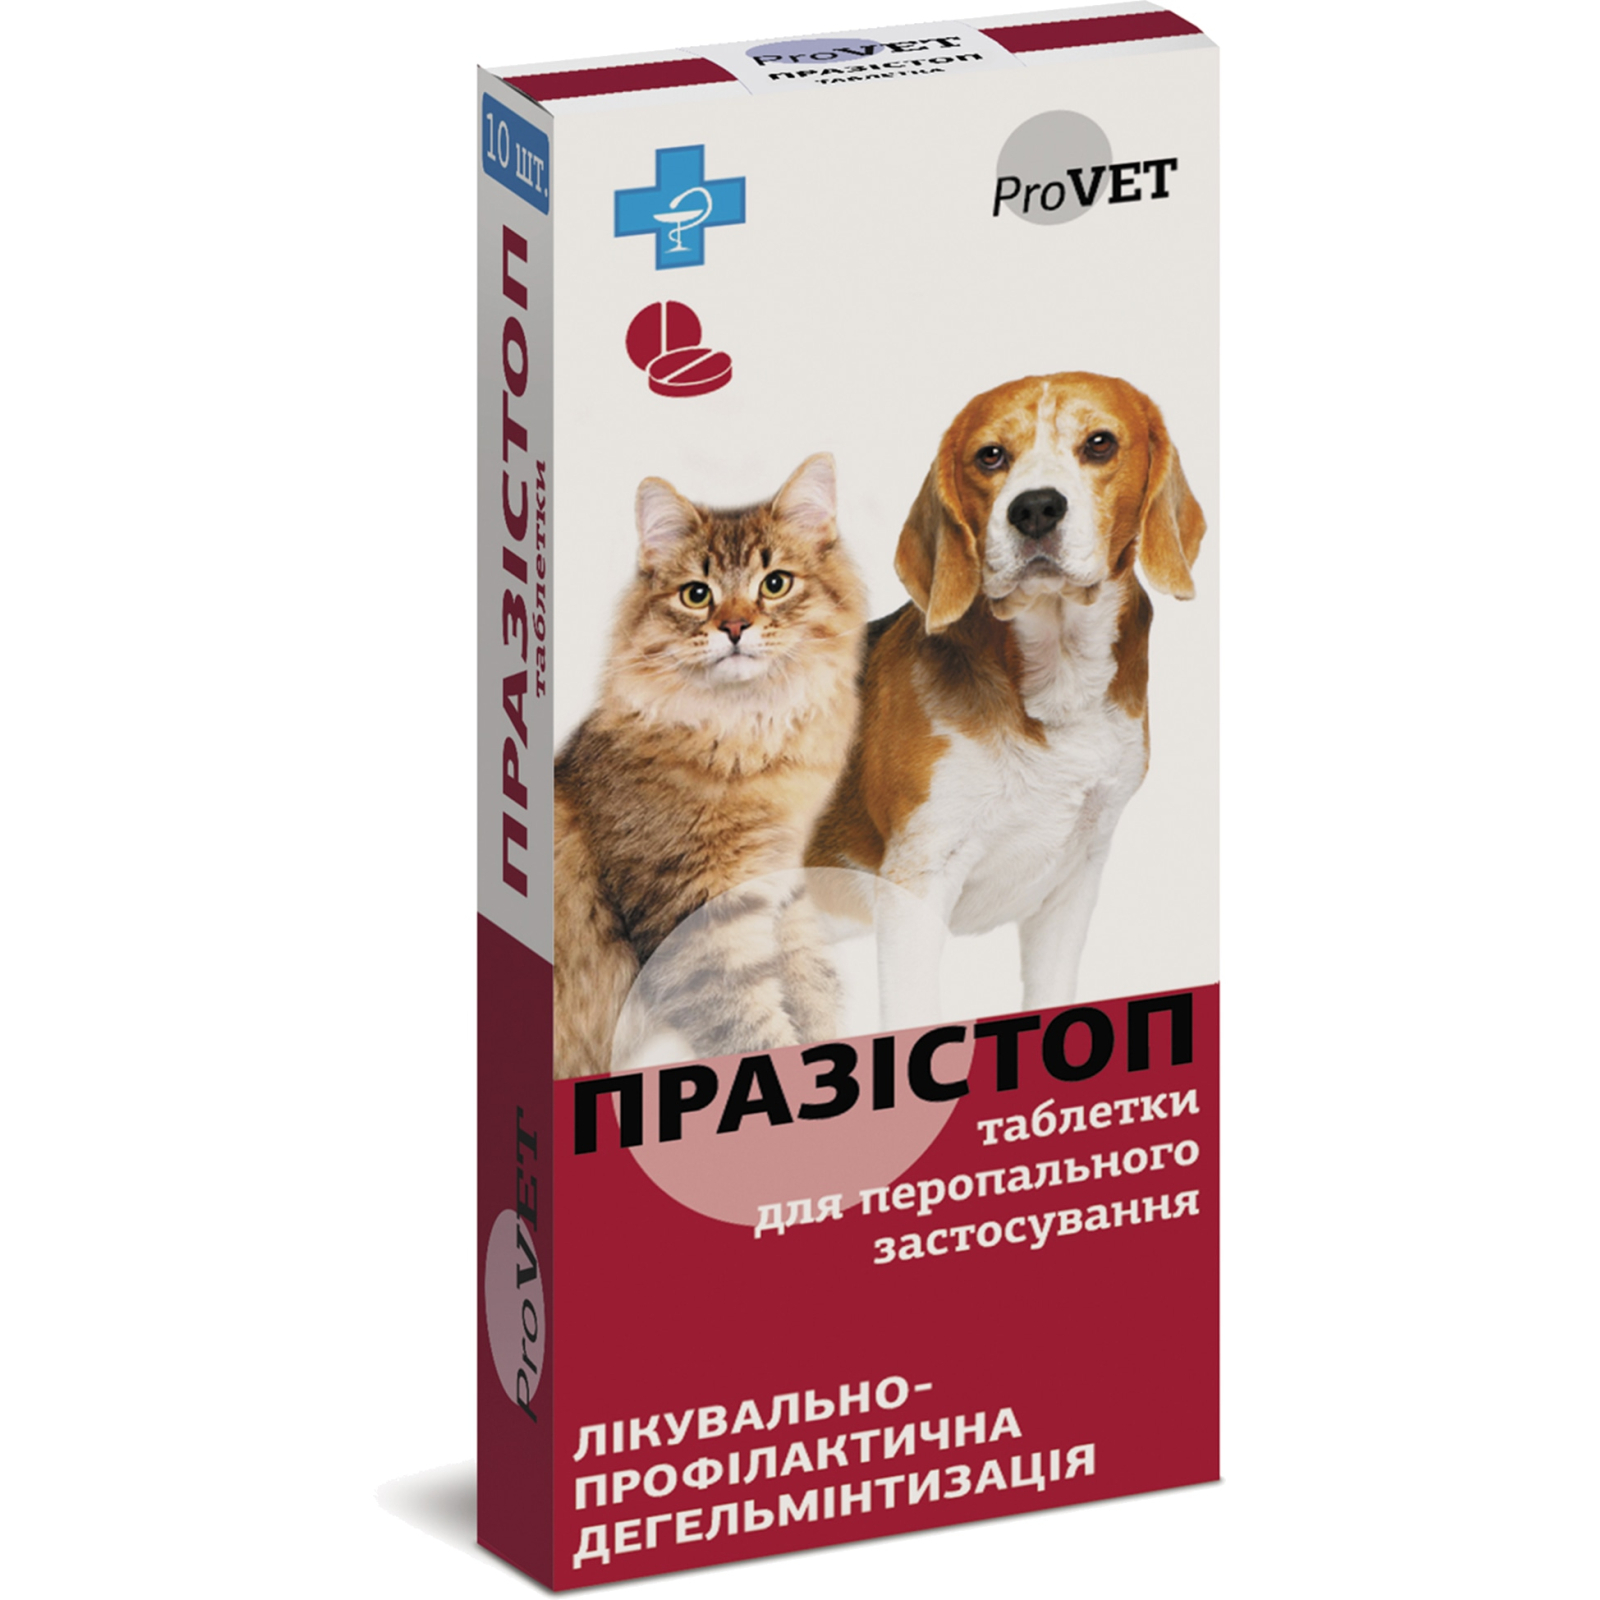 Таблетки для животных ProVET Прозистоп. Антигельминтный препарат 10 табл. (4823082417568)